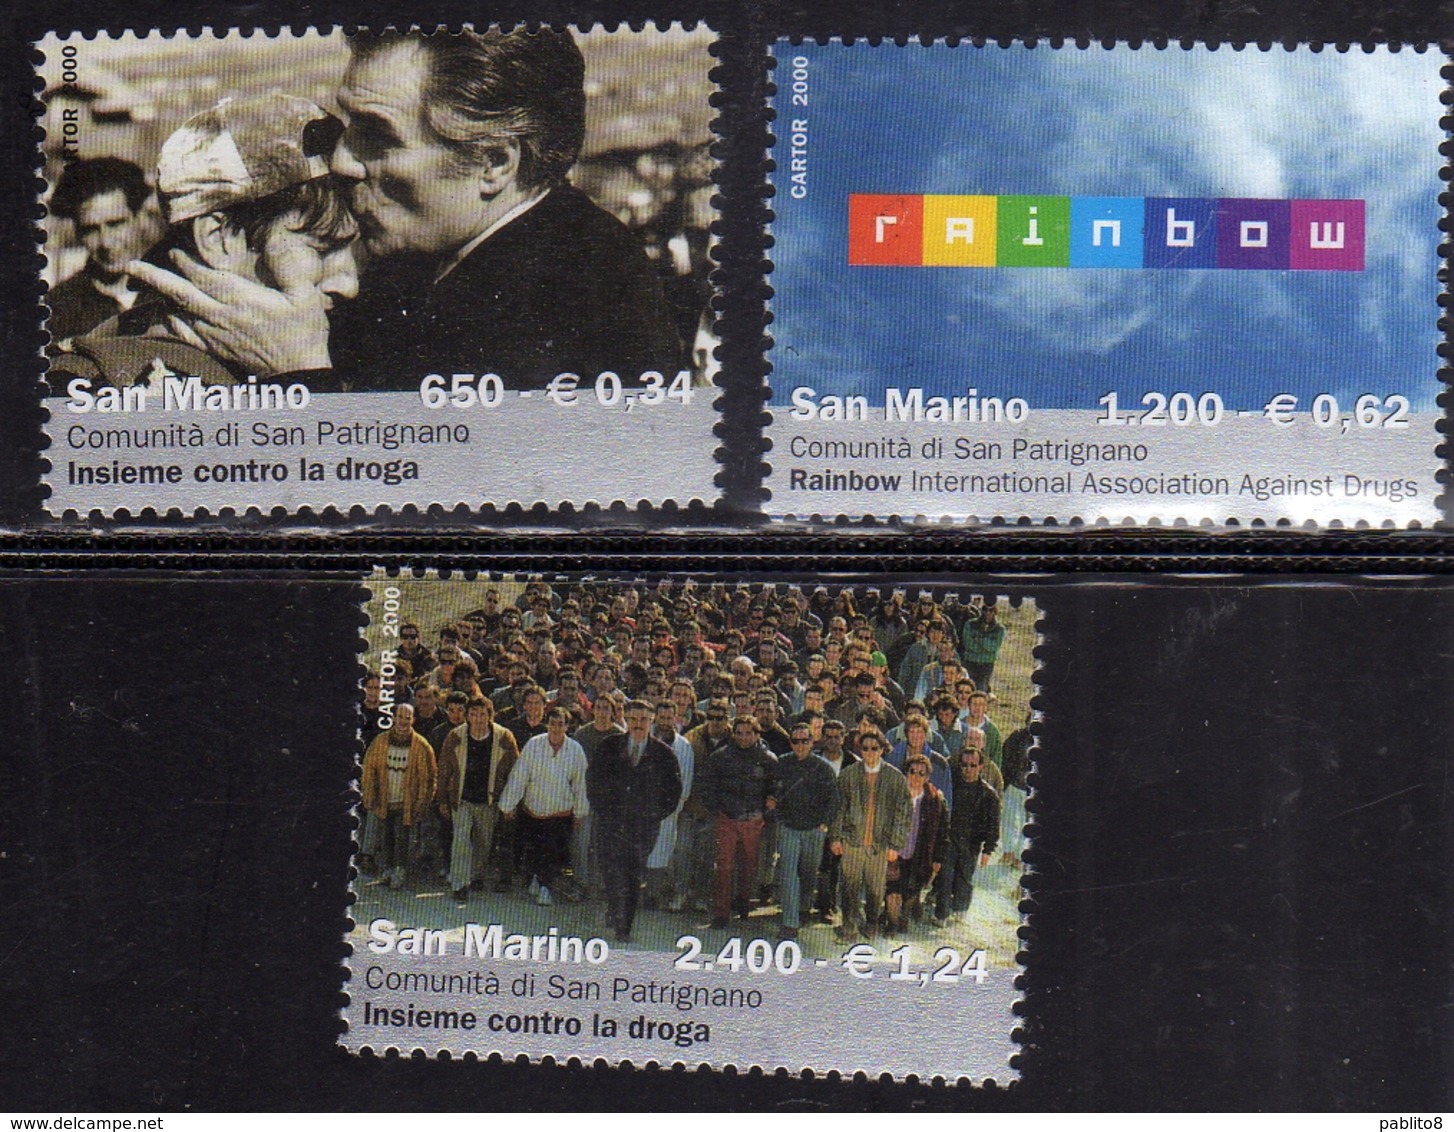 REPUBBLICA DI SAN MARINO 2000 RAINBOW INSIEME CONTRO LA DROGA SERIE COMPLETA COMPLETE SET MNH - Unused Stamps